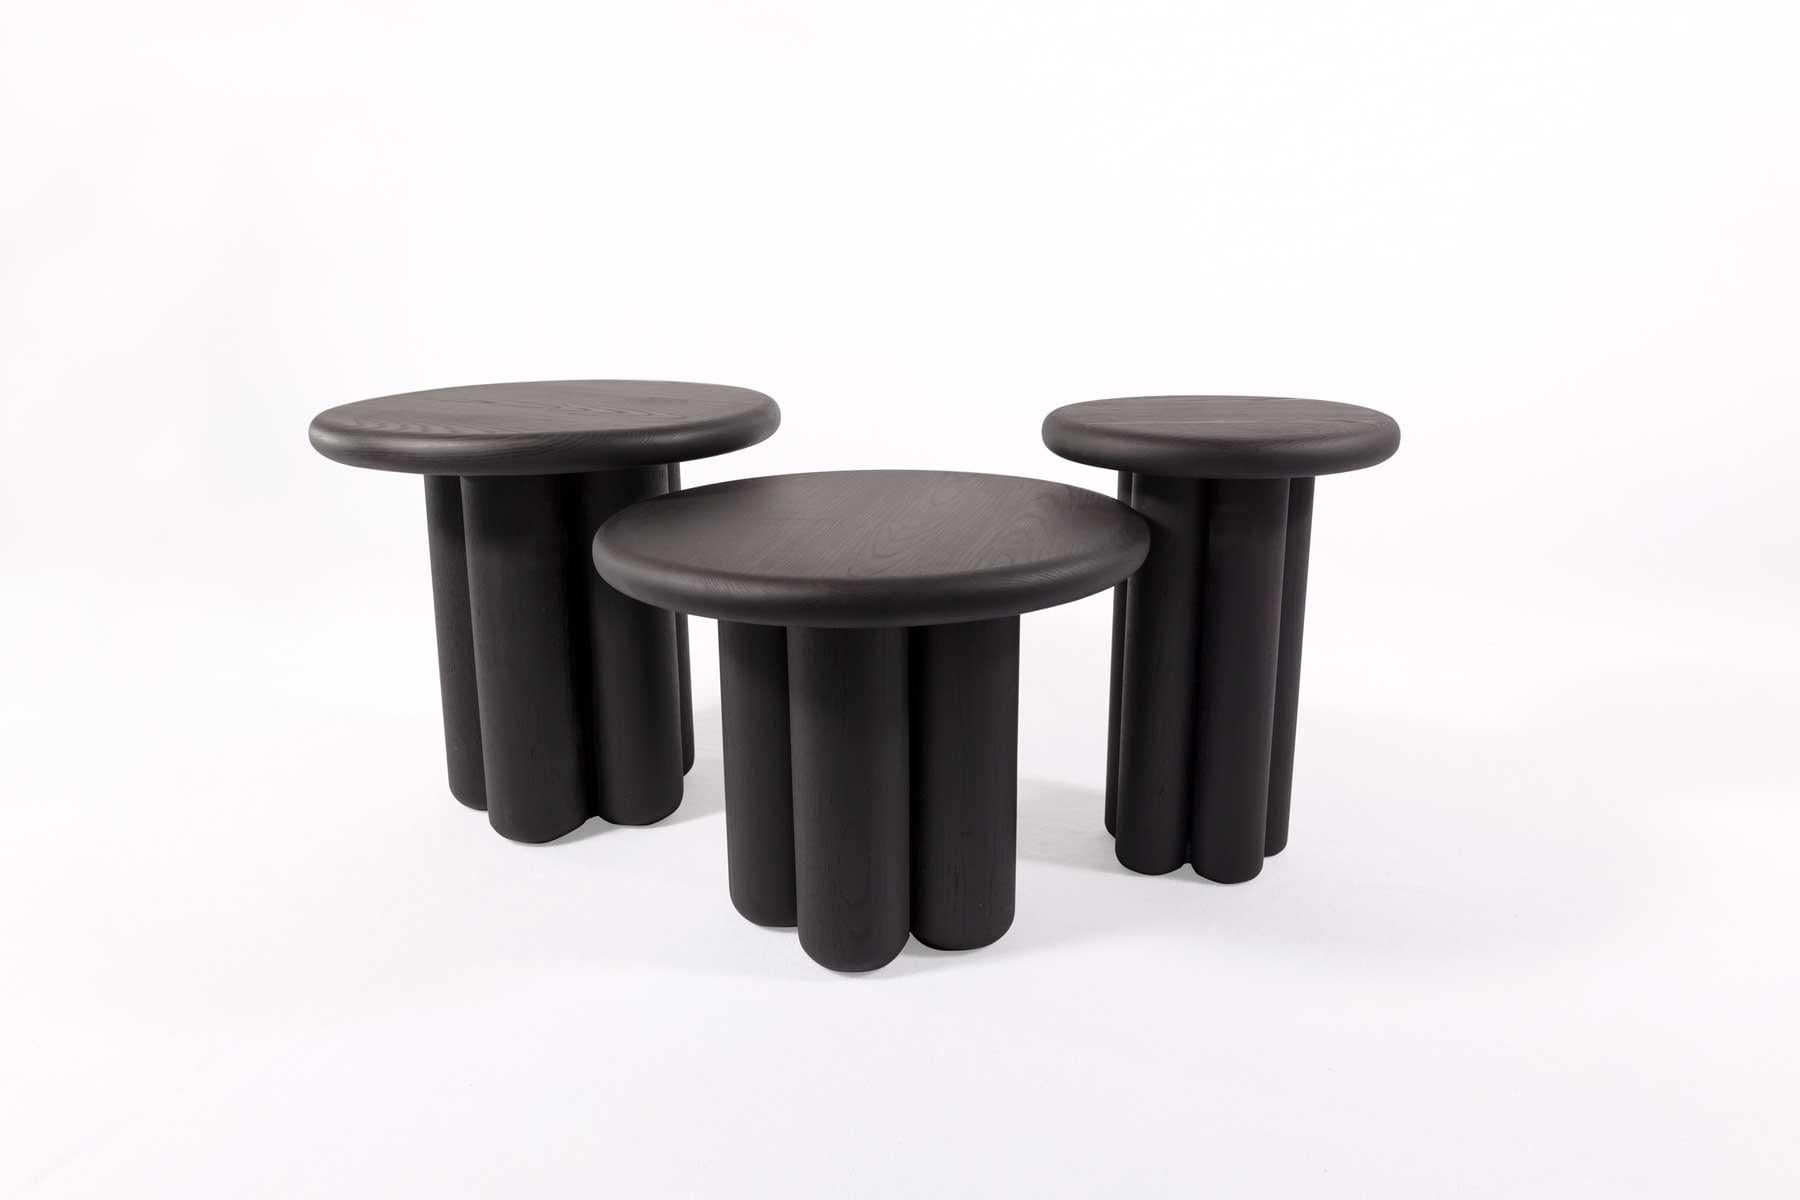 Une collection de tables conçues pour fonctionner indépendamment ou comme un groupe de pièces imbriquées. Chaque table est composée de cinq pieds arrondis et d'un plateau arrondi. Des couleurs, tailles et hauteurs personnalisées sont disponibles sur